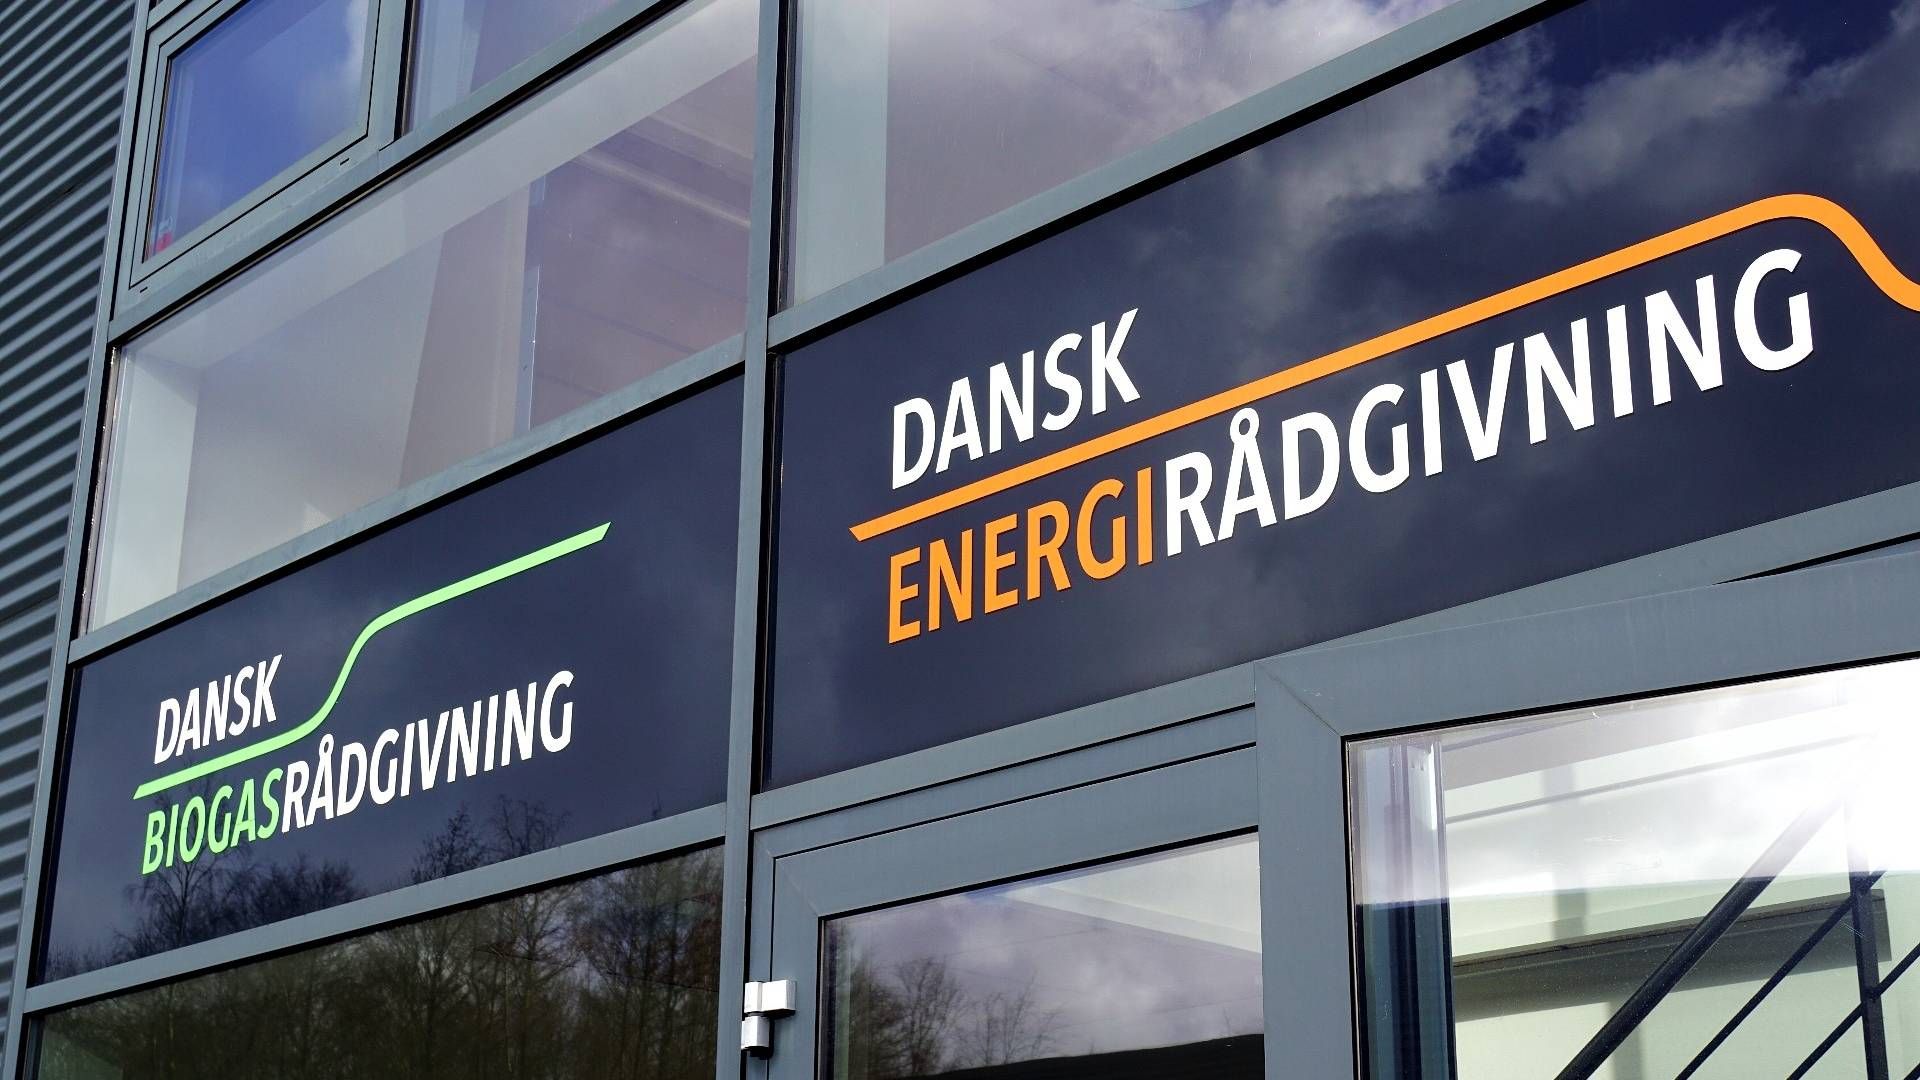 Foto: Dansk Energirådgivning